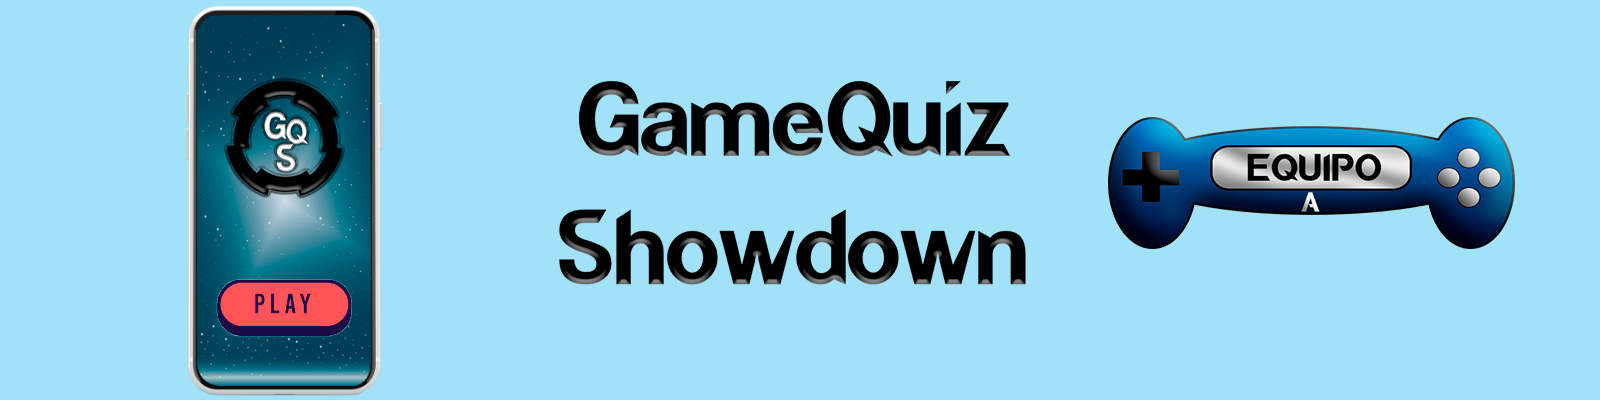 GameQuiz Showdown